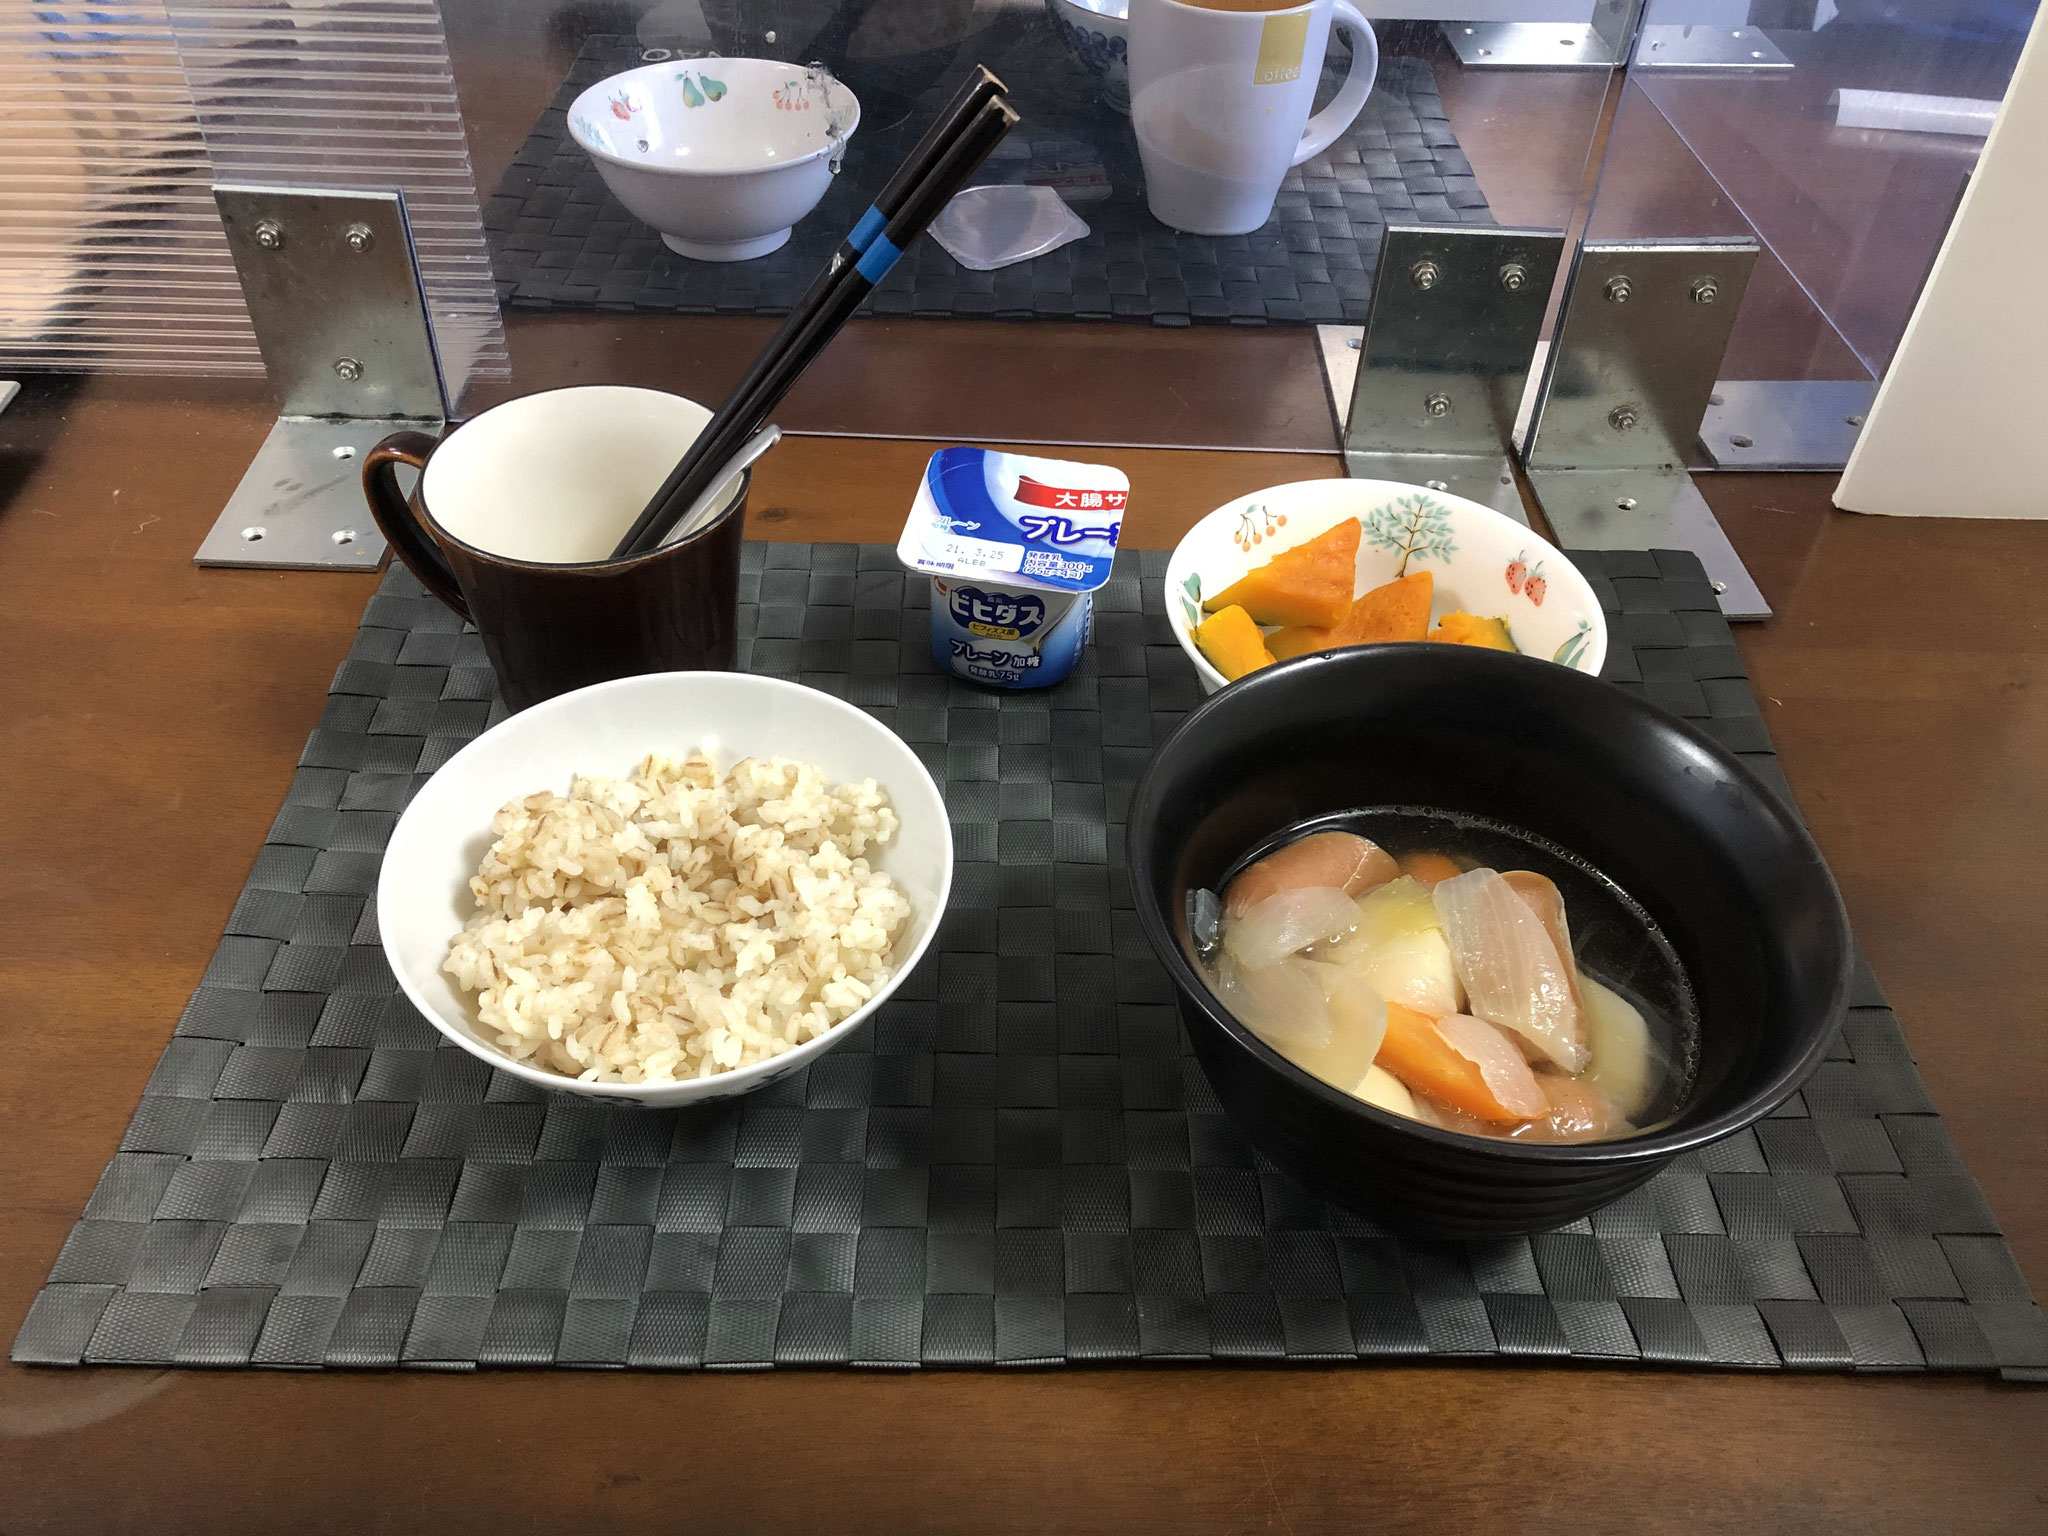 3月15日月曜日、Ohana朝食「ポトフ（じゃがいも、人参、玉ねぎ、ウインナー）、かぼちゃの煮物、ヨーグルト」